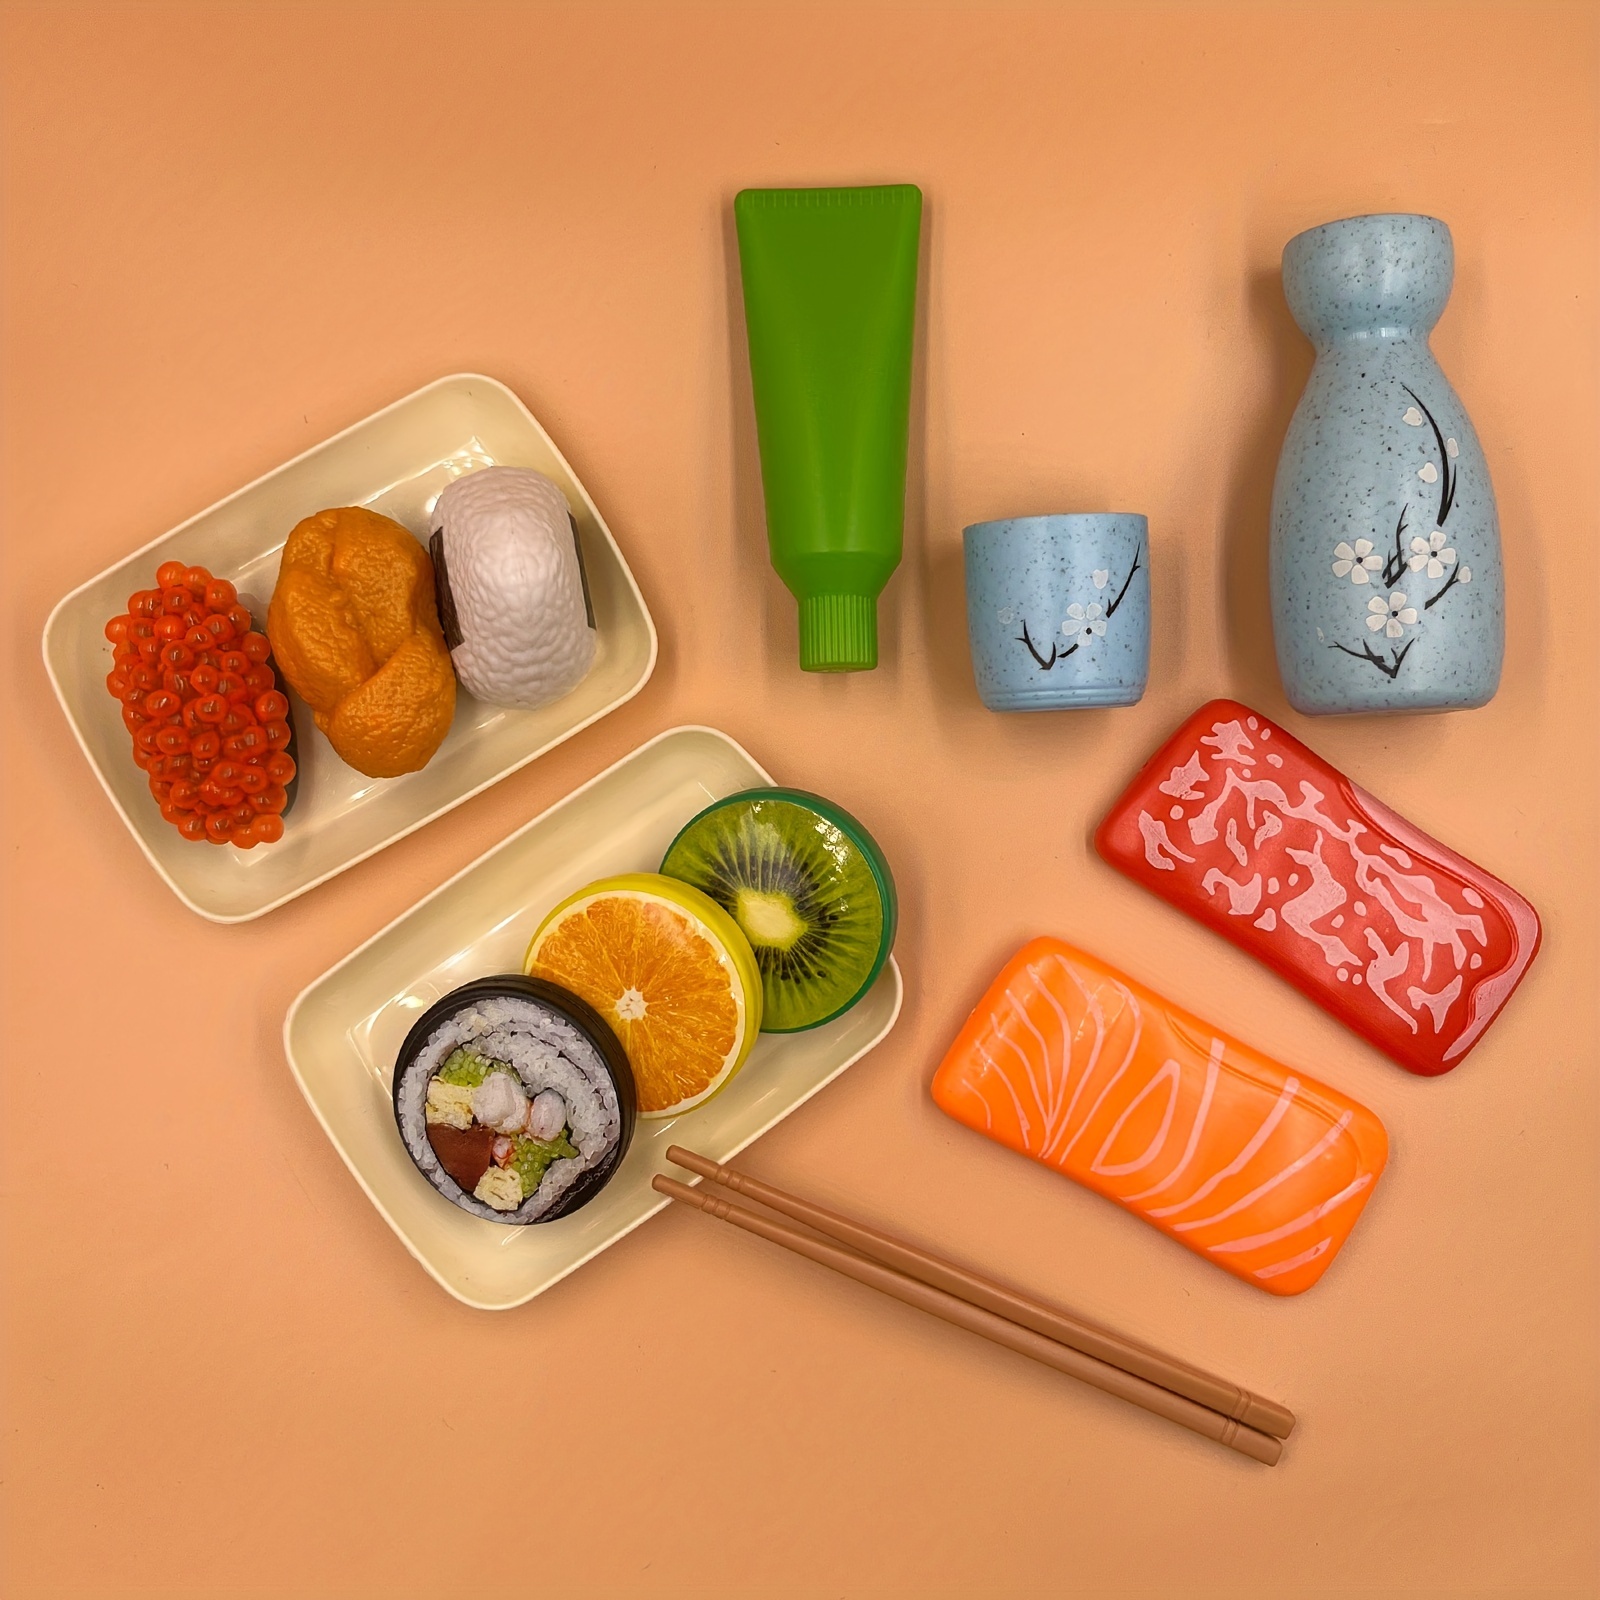 Jogo 2 Comidas Japonesa Sushi Infantil Brinquedo Cozinha Toy